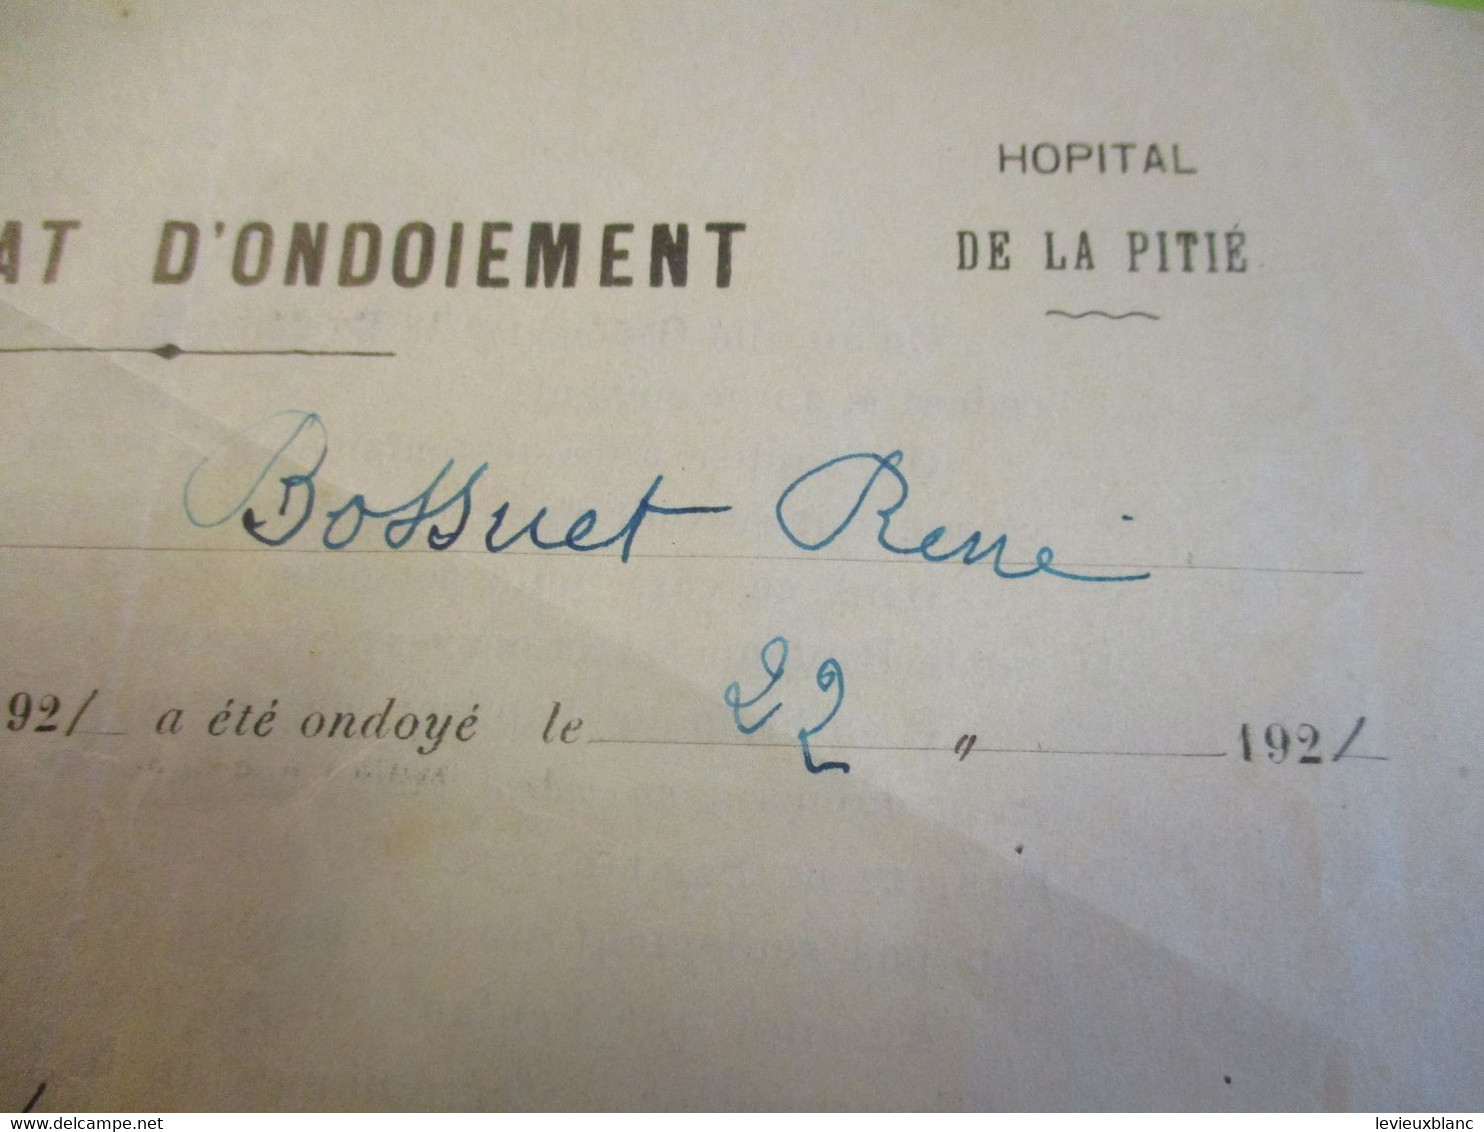 Certificat D'ondoiement/Diocése De Paris / Hopital De La Pitié/ René BOSSUET/ 1921              CAN852 - Godsdienst & Esoterisme